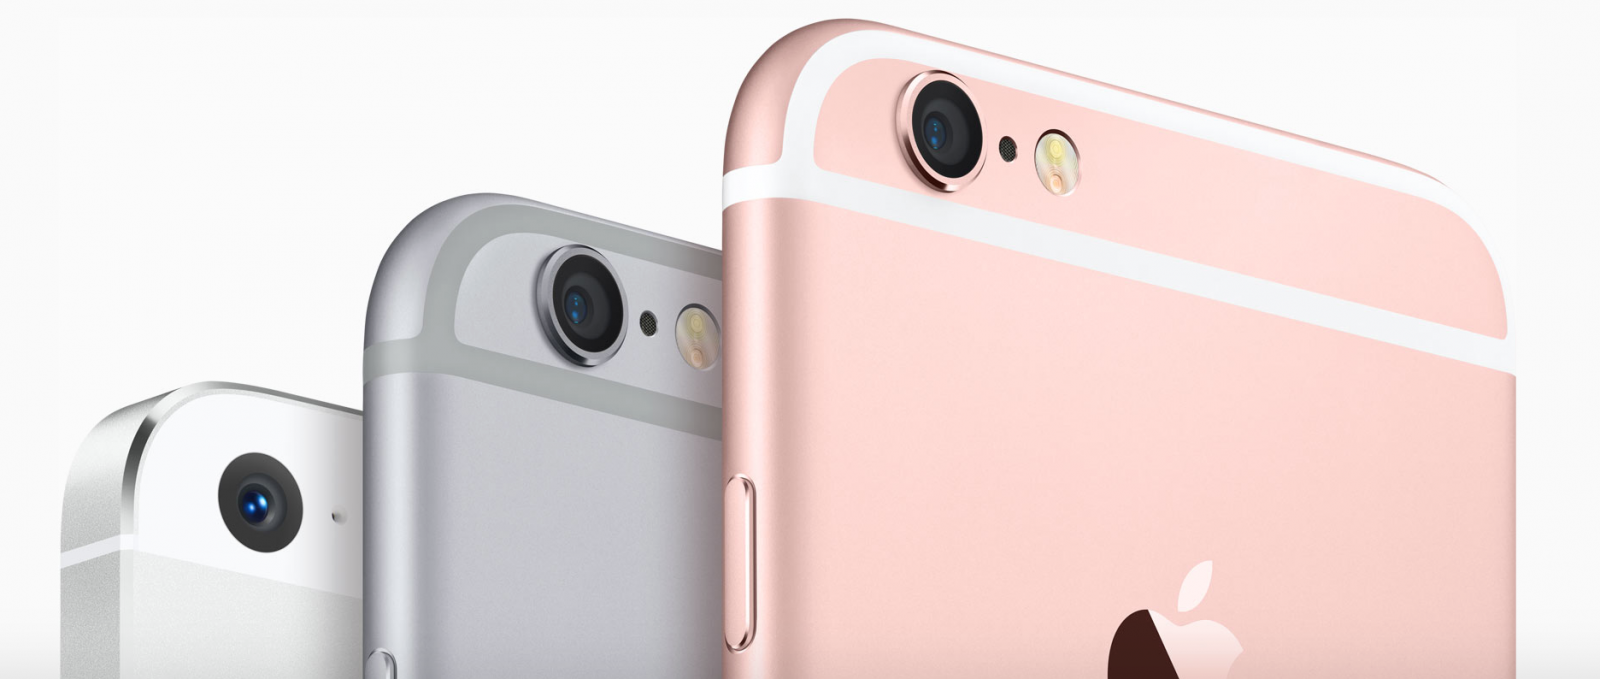 Apple iPhone 5se și iPad Air 3 ar putea ajunge la vanzare incepand din 18 martie (Zvon)